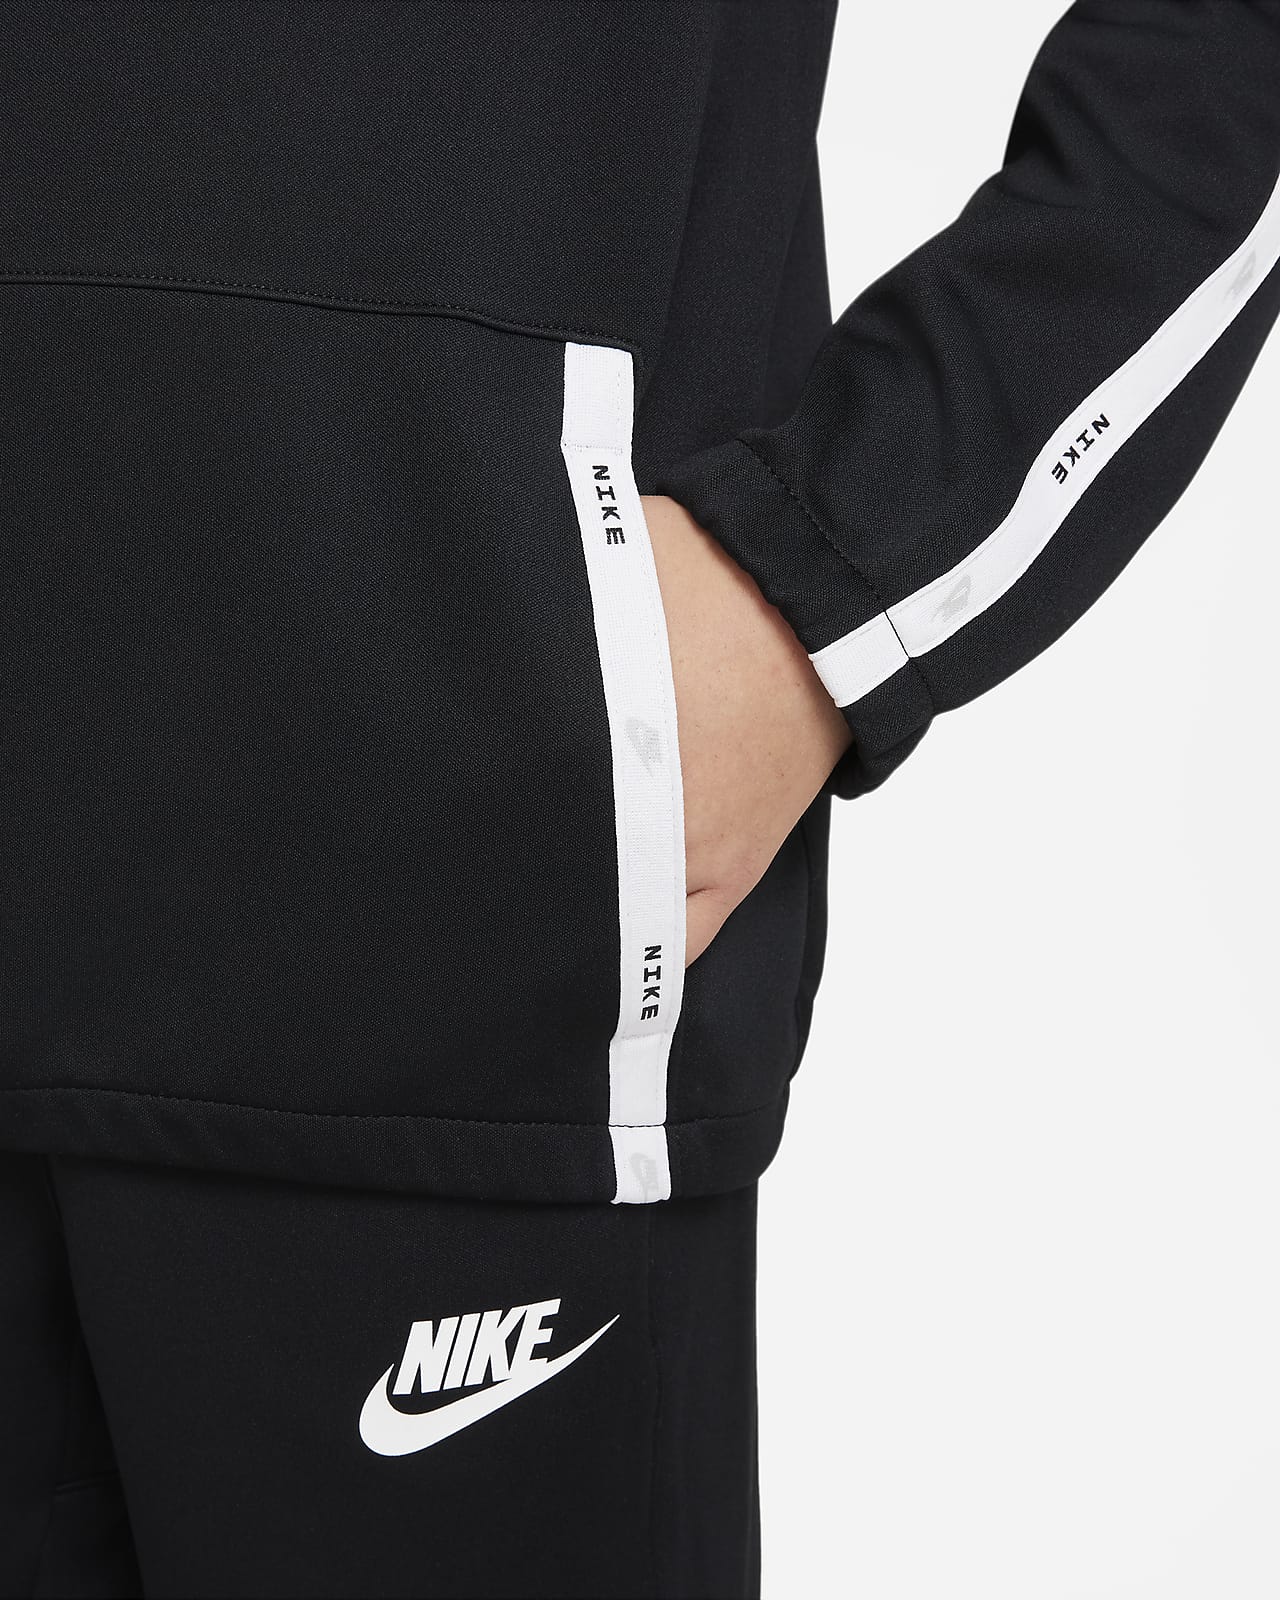 obturador mezcla descuento Nike Sportswear Chándal - Niño/a. Nike ES